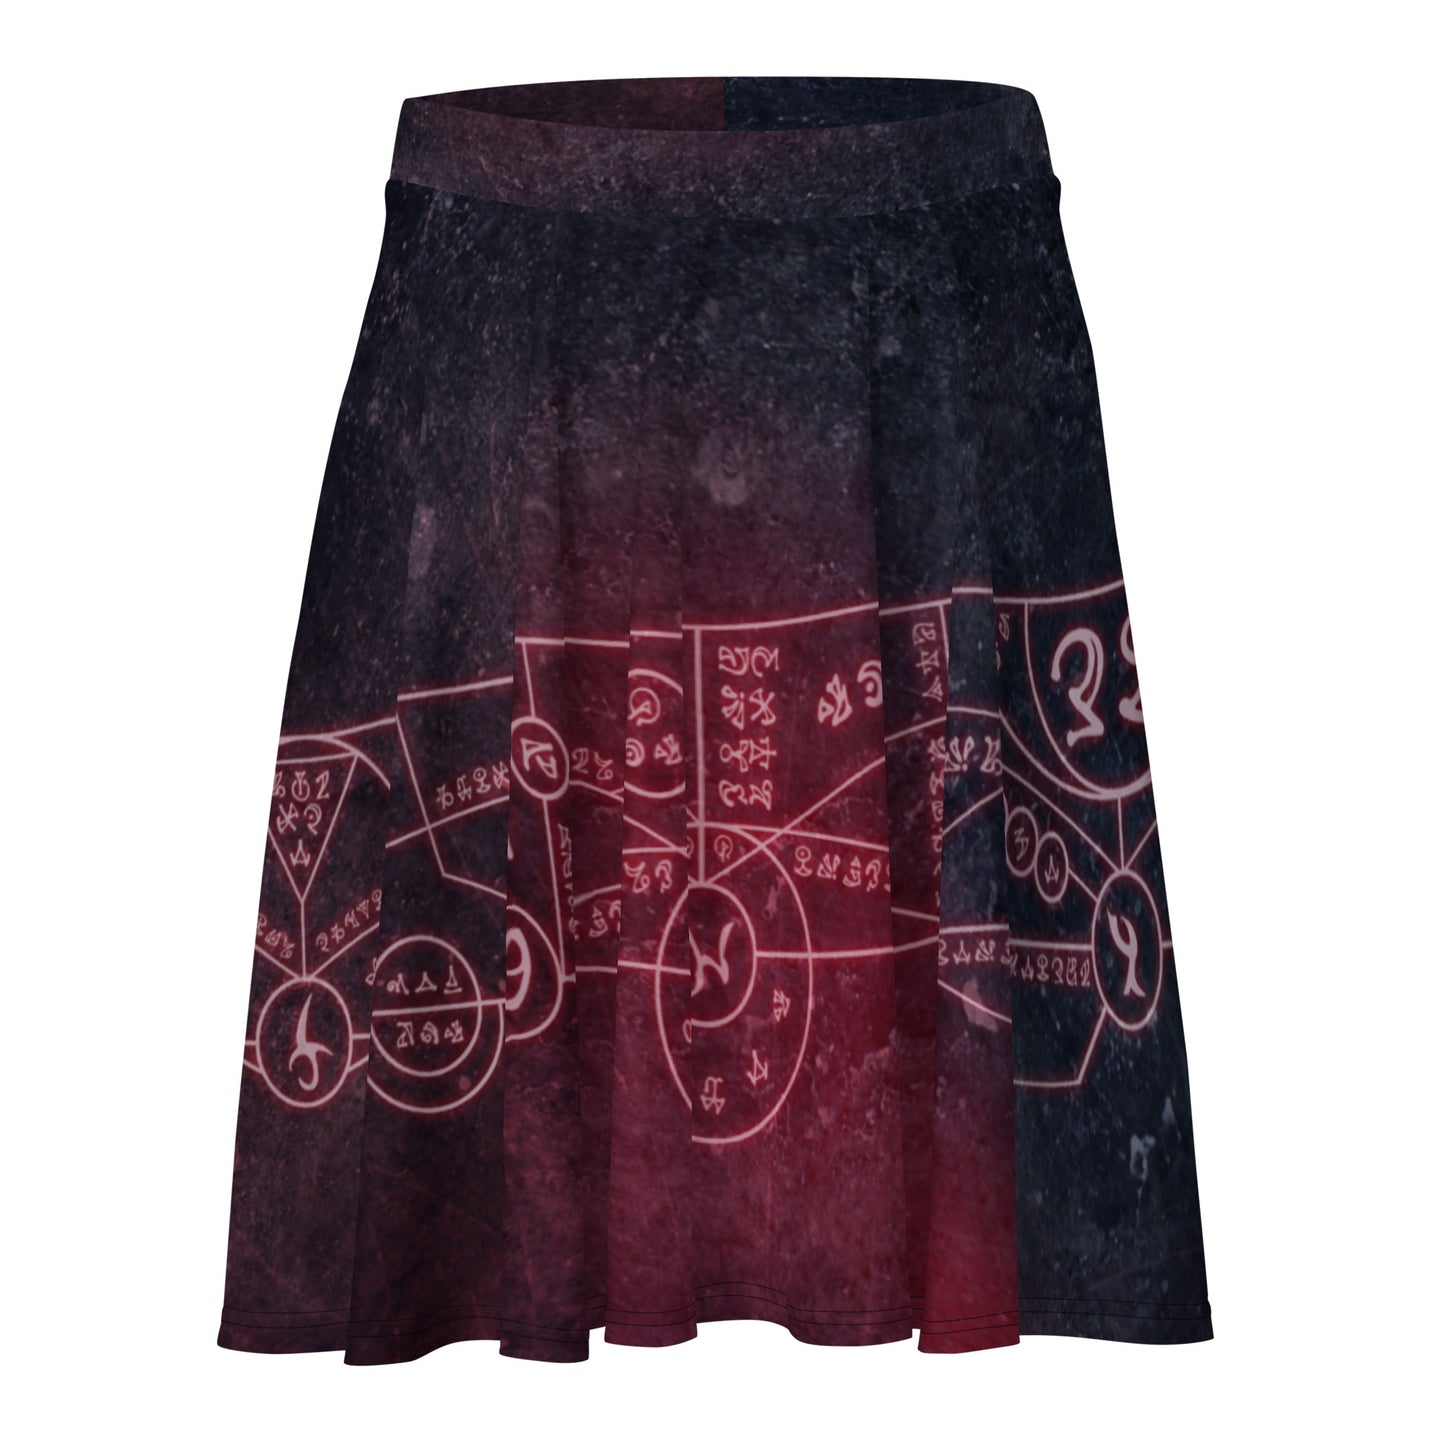 "Summoning Circle" Skater Skirt (The Guild Codex)